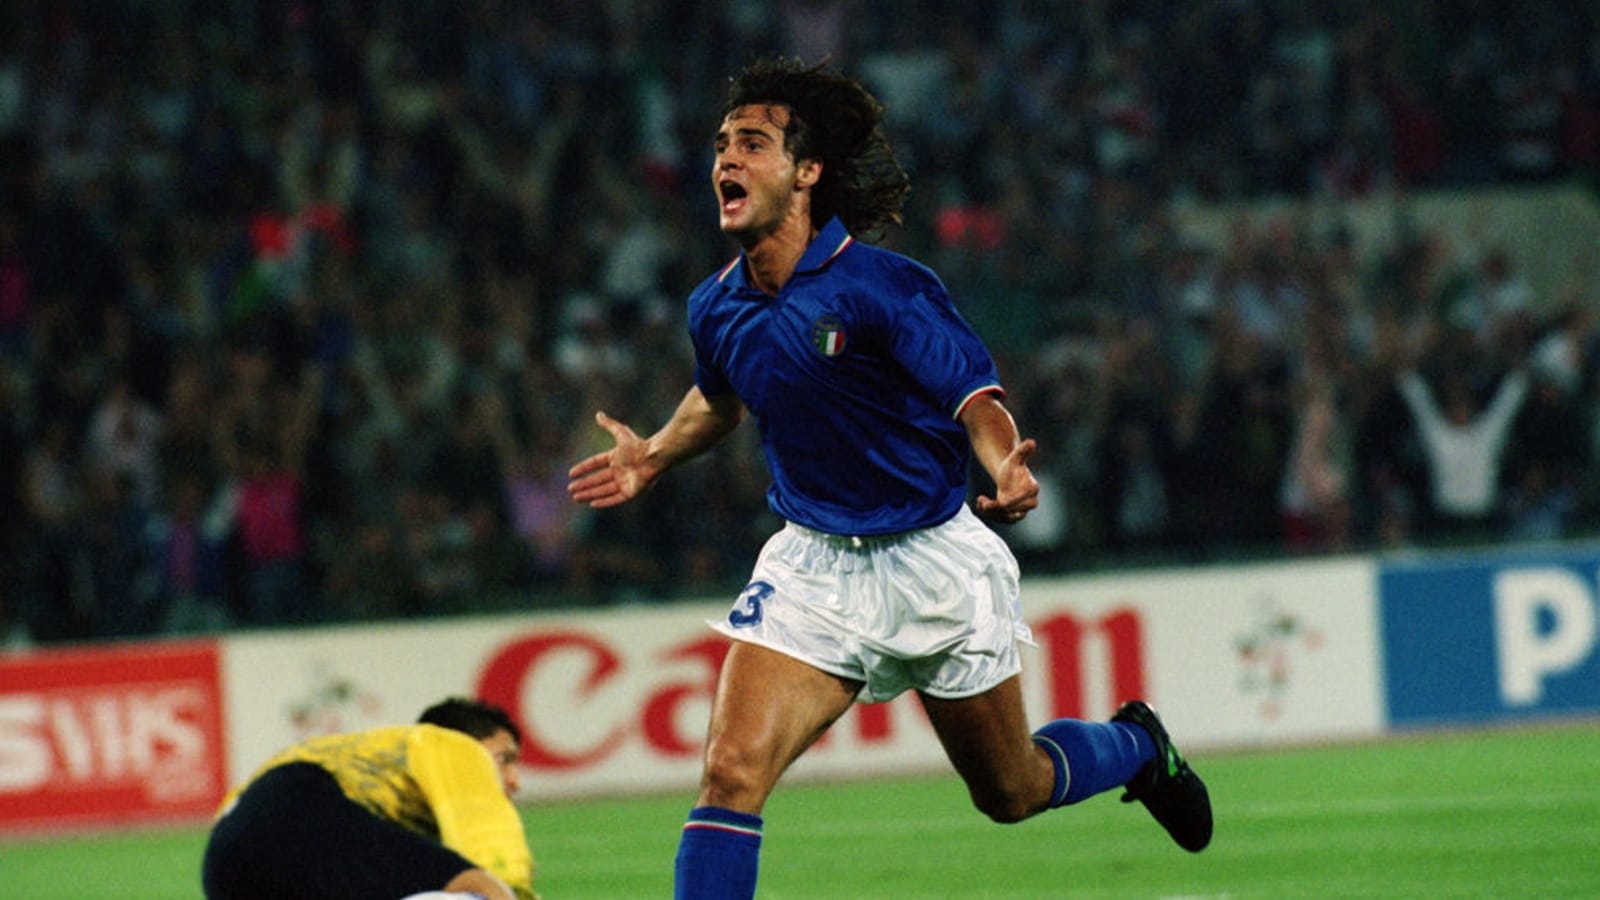 ITALIA 90 - Il ricordo di Giuseppe Giannini - Calcio - Rai Sport